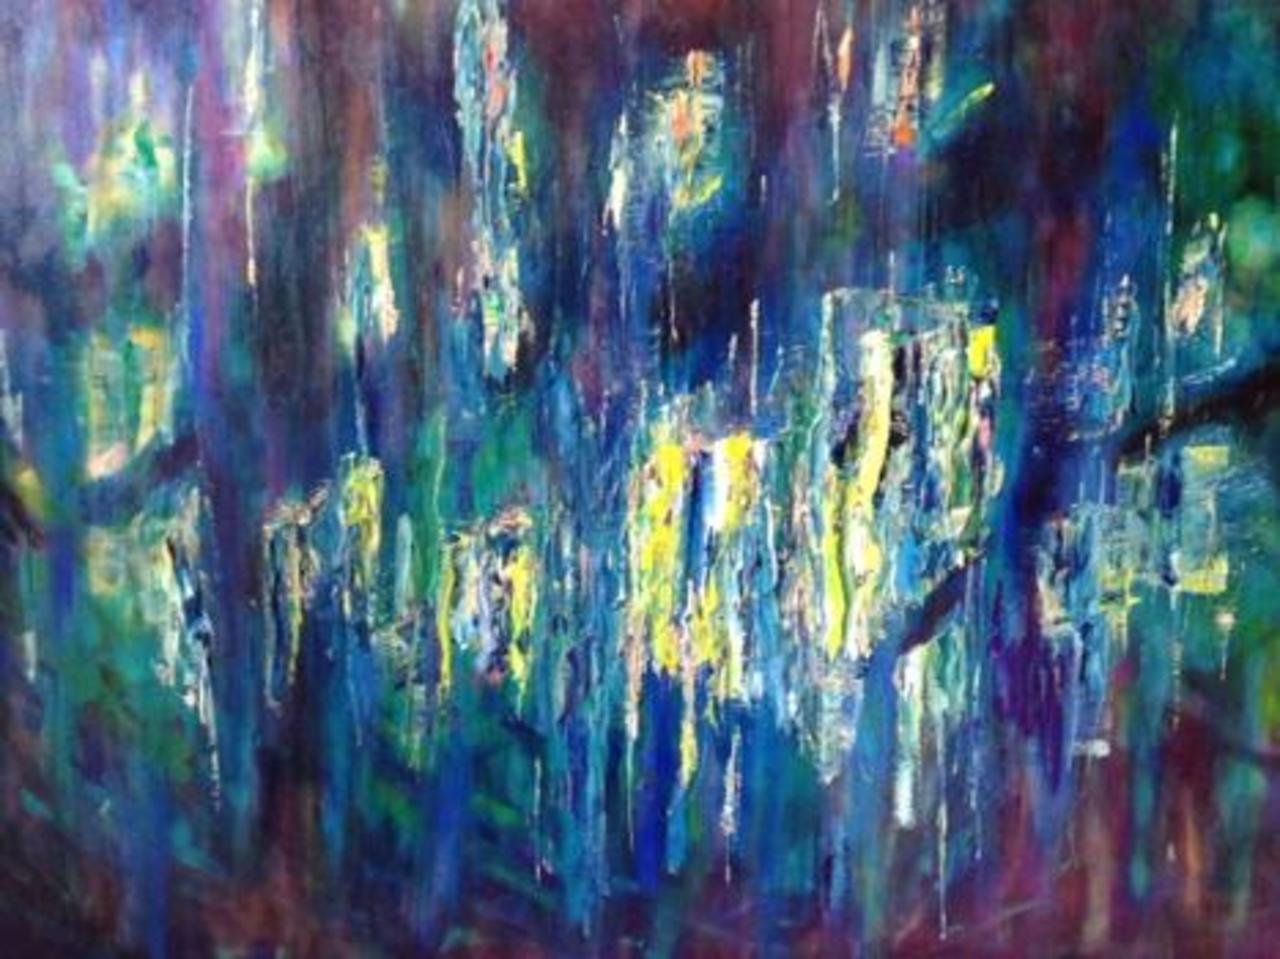 36x48 #abstract landscape, oil painting, #art http://t.co/PIeN0EuCpZ